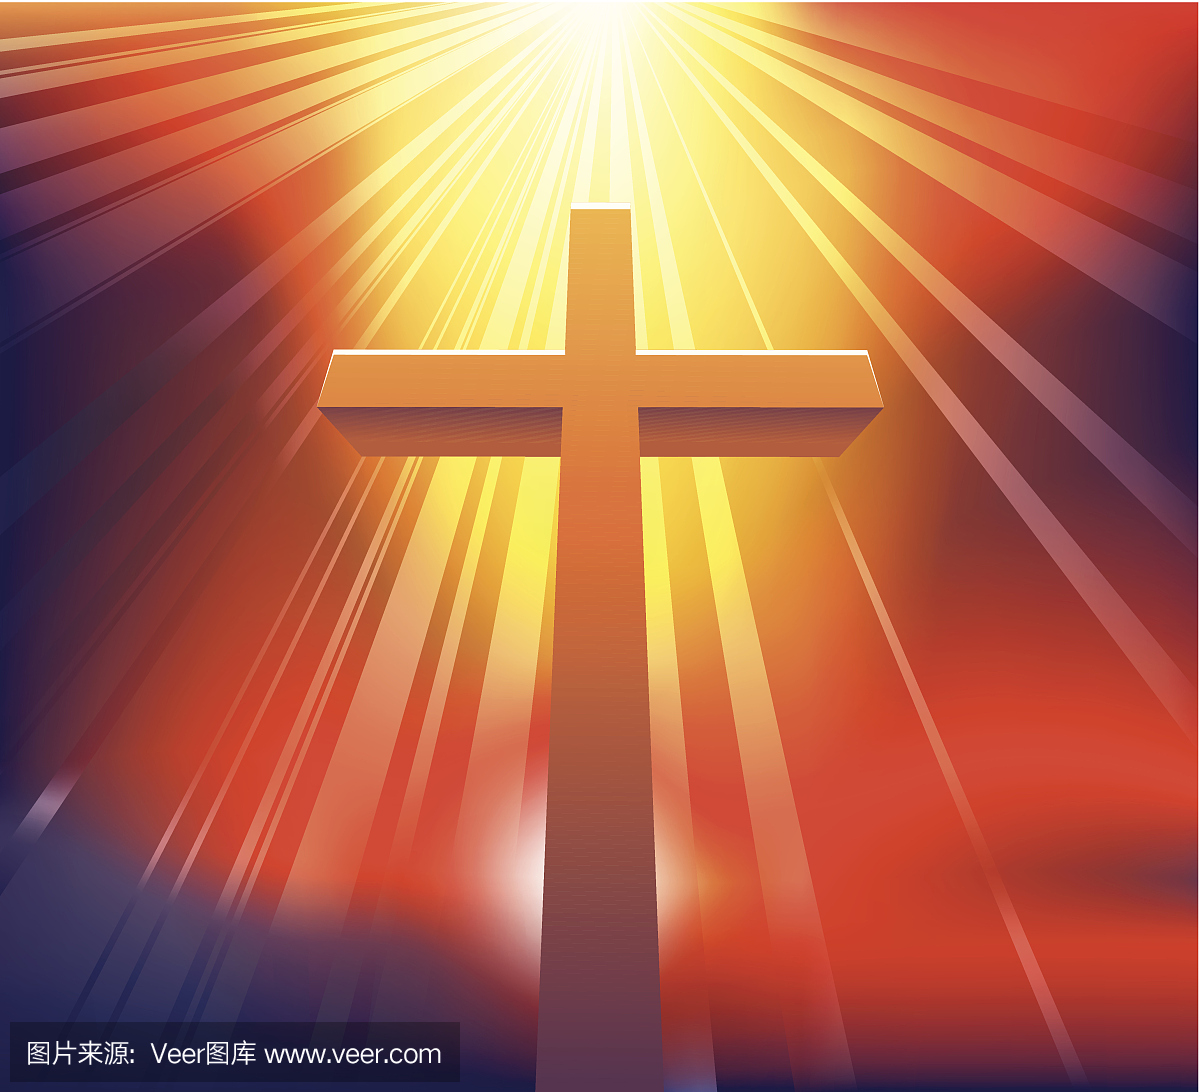 基督的十字架 | 小光芒心靈見證